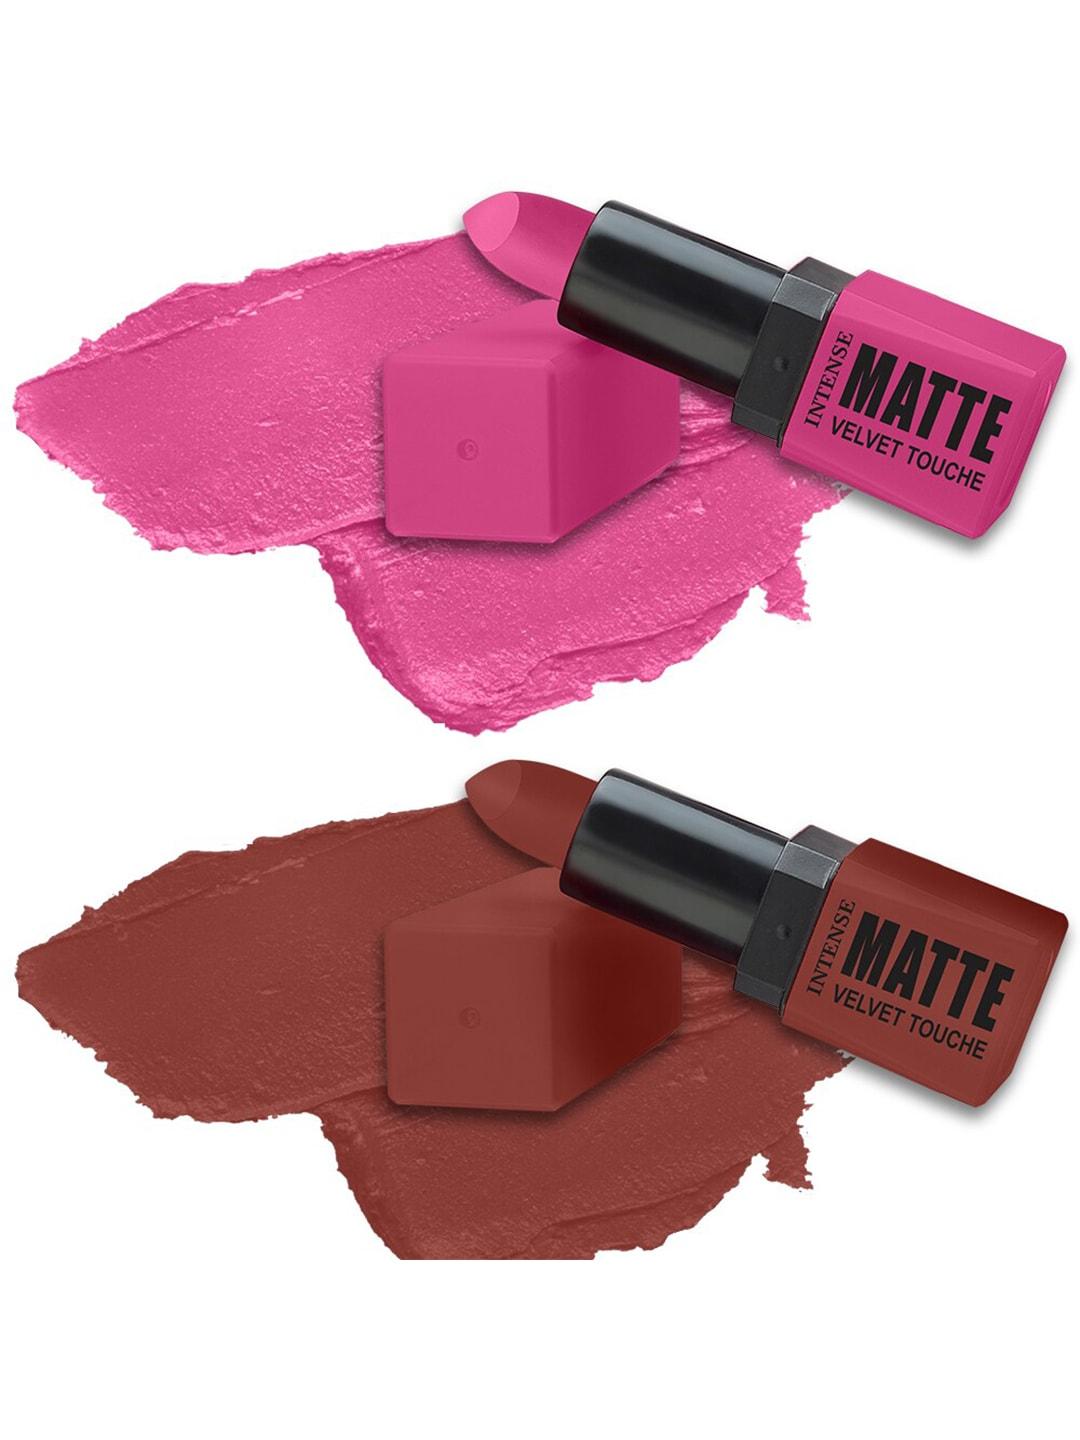 ForSure Set of 2 Intense Matte Velvet Touche Long Lasting Lipsticks 3.5g Each - 309 & 308